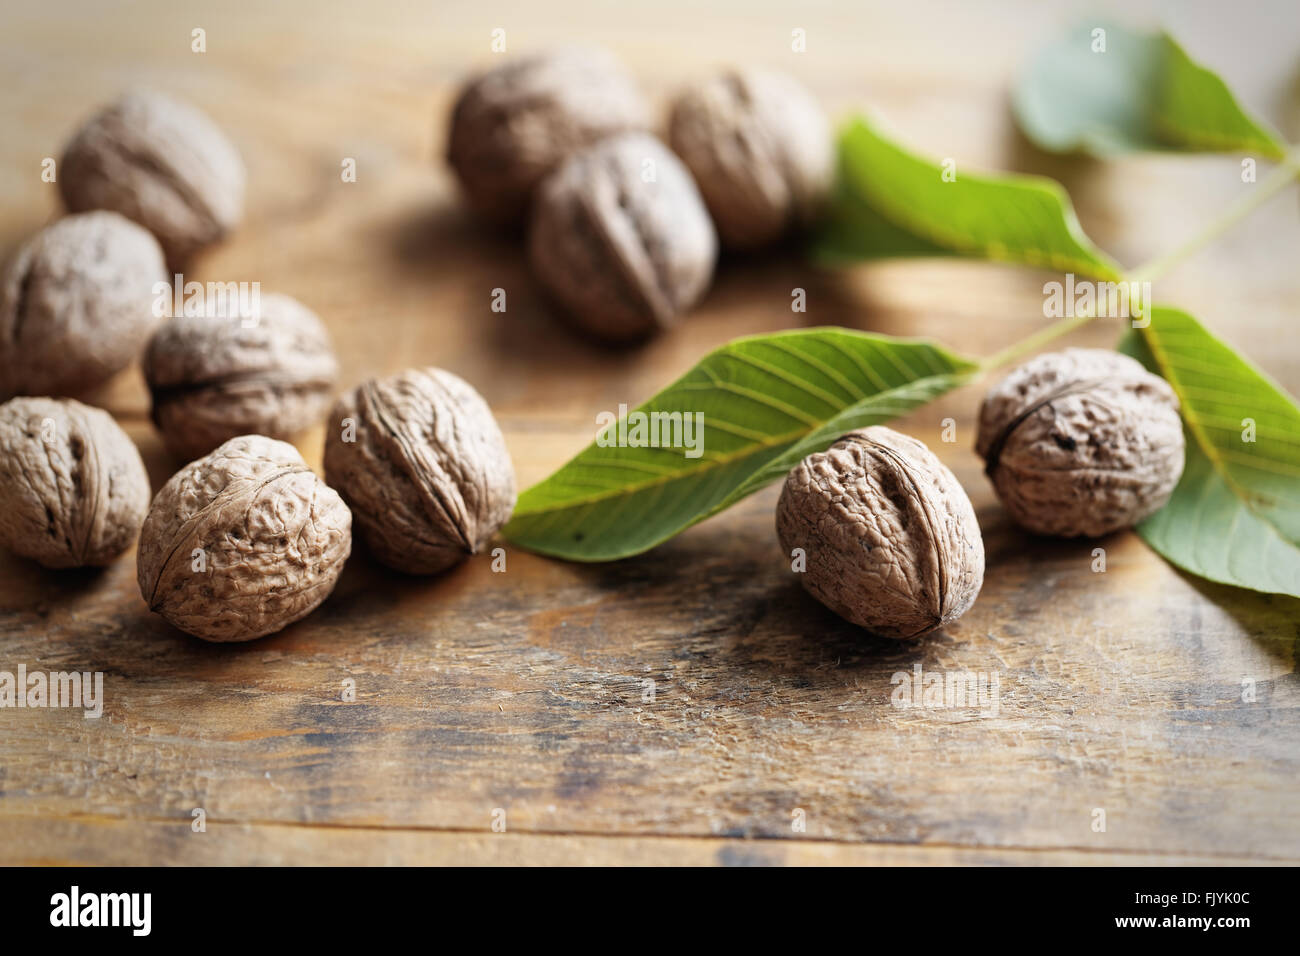 Les noix sur table en bois Banque D'Images